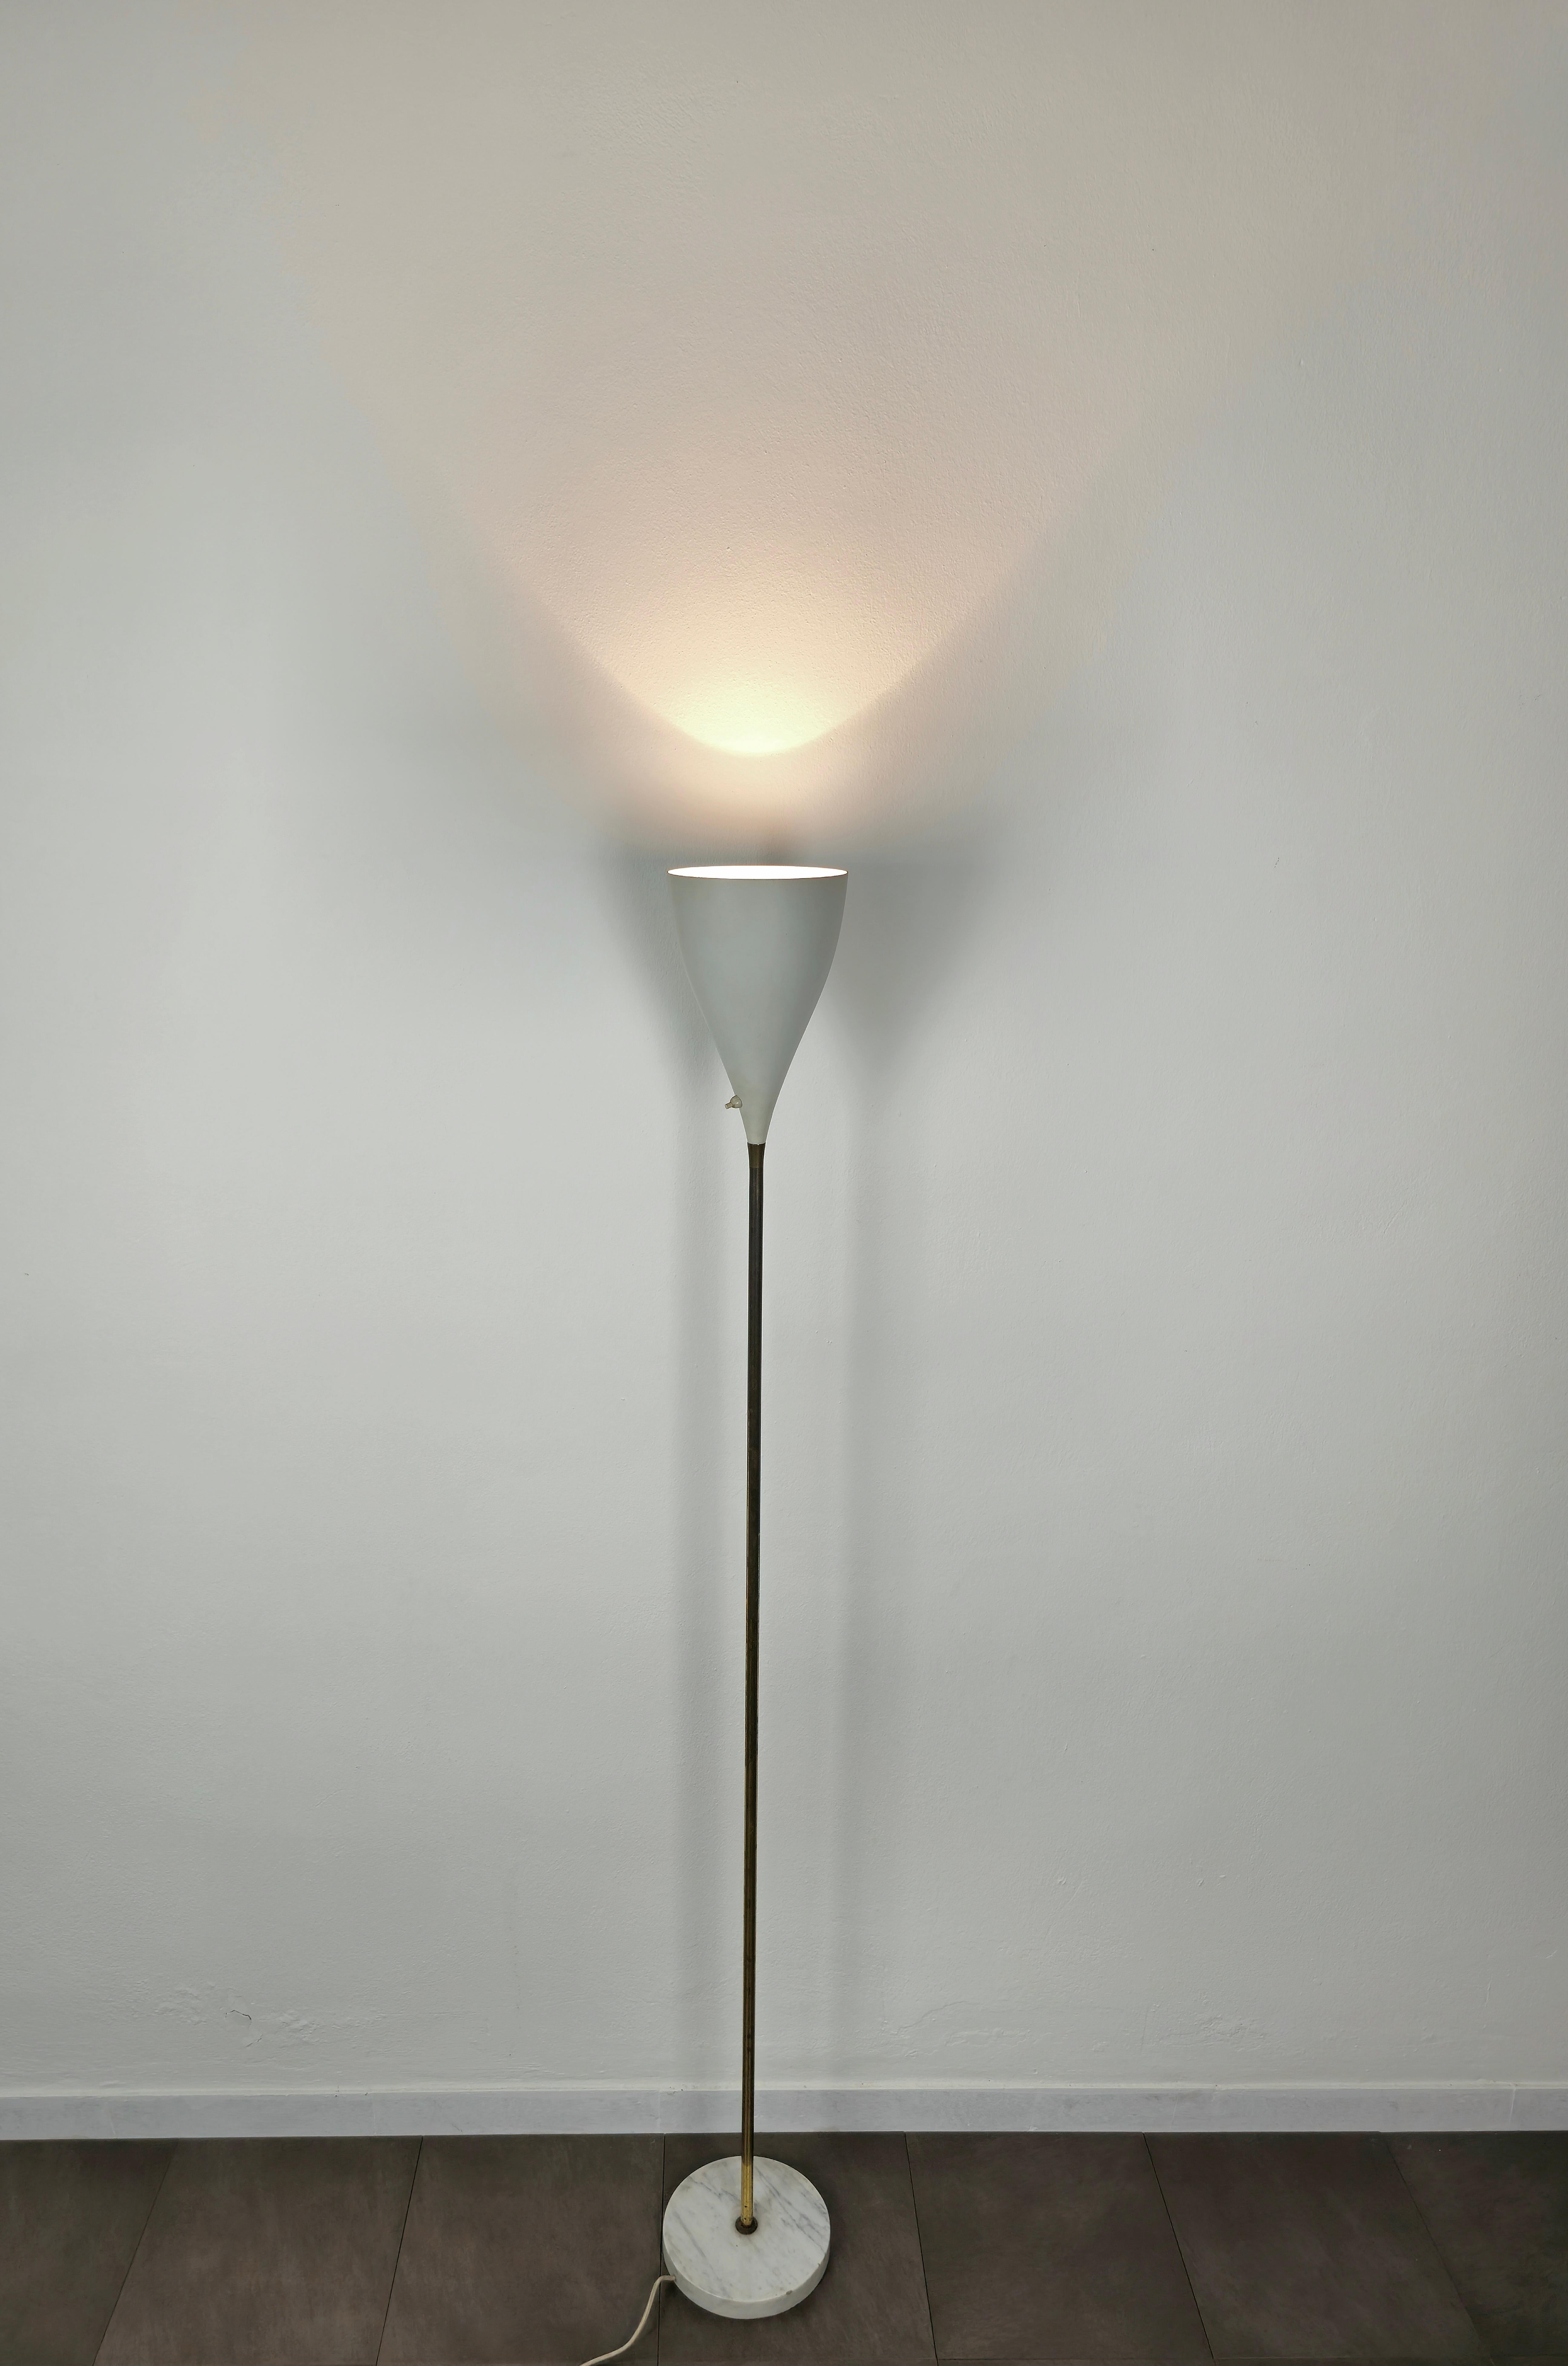 Rare et élégant lampadaire avec 1 lumière E27 produit en Italie dans les années 1950, attribué à Stilnovo.
Le lampadaire a été réalisé avec une base circulaire en marbre blanc où se trouve une longue tige en laiton avec un diffuseur de forme conique